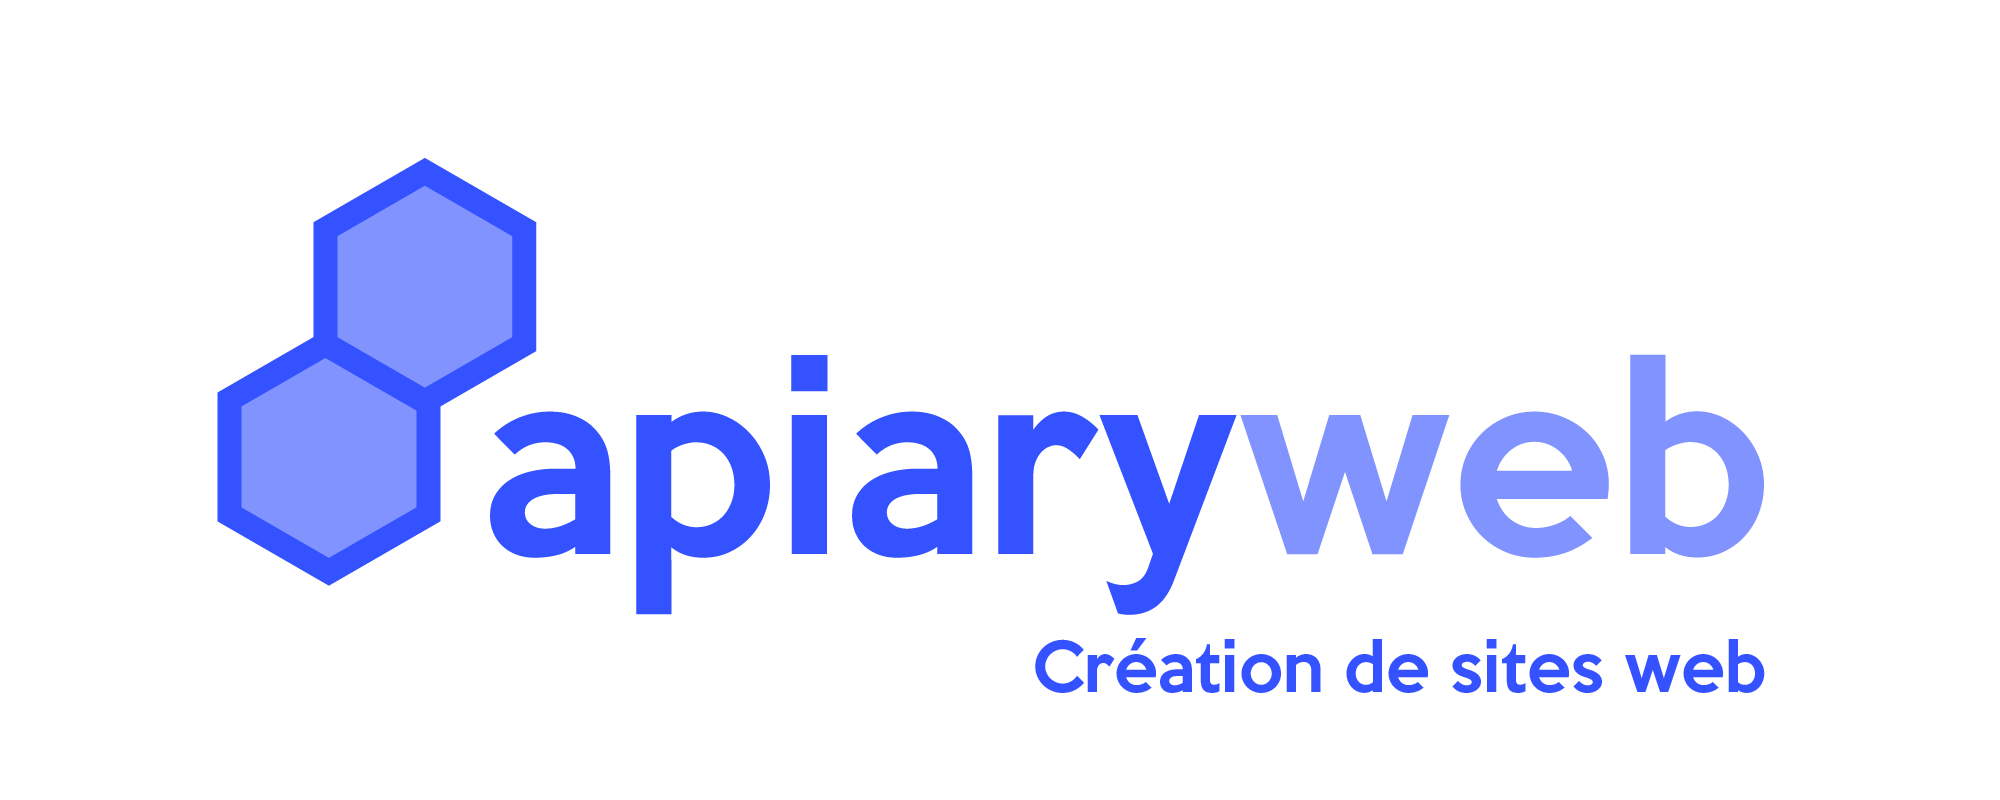 Apiaryweb - Création de sites web